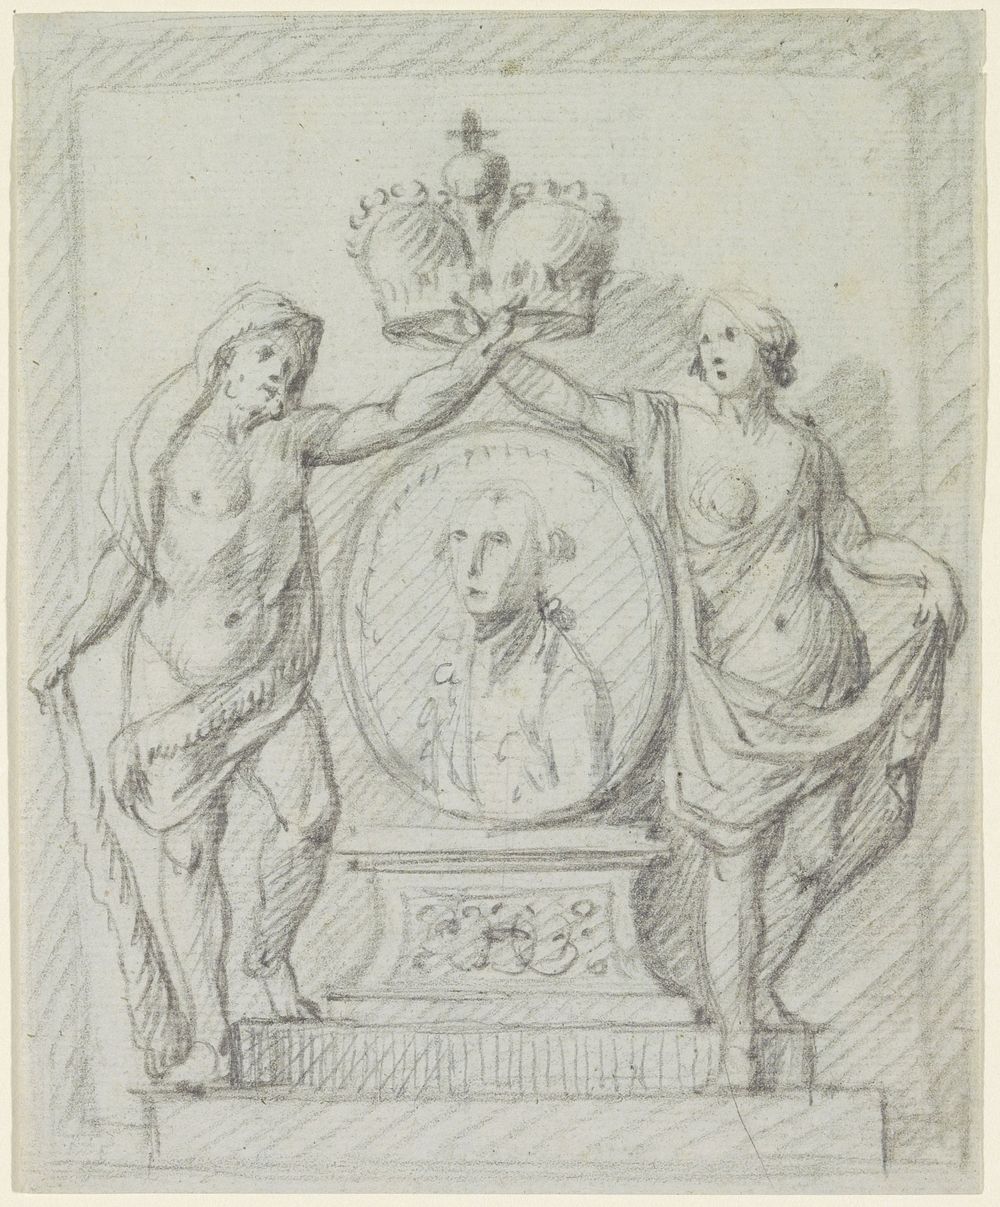 Grafmonument met medaillon en staande figuren (1650 - 1800) by anonymous